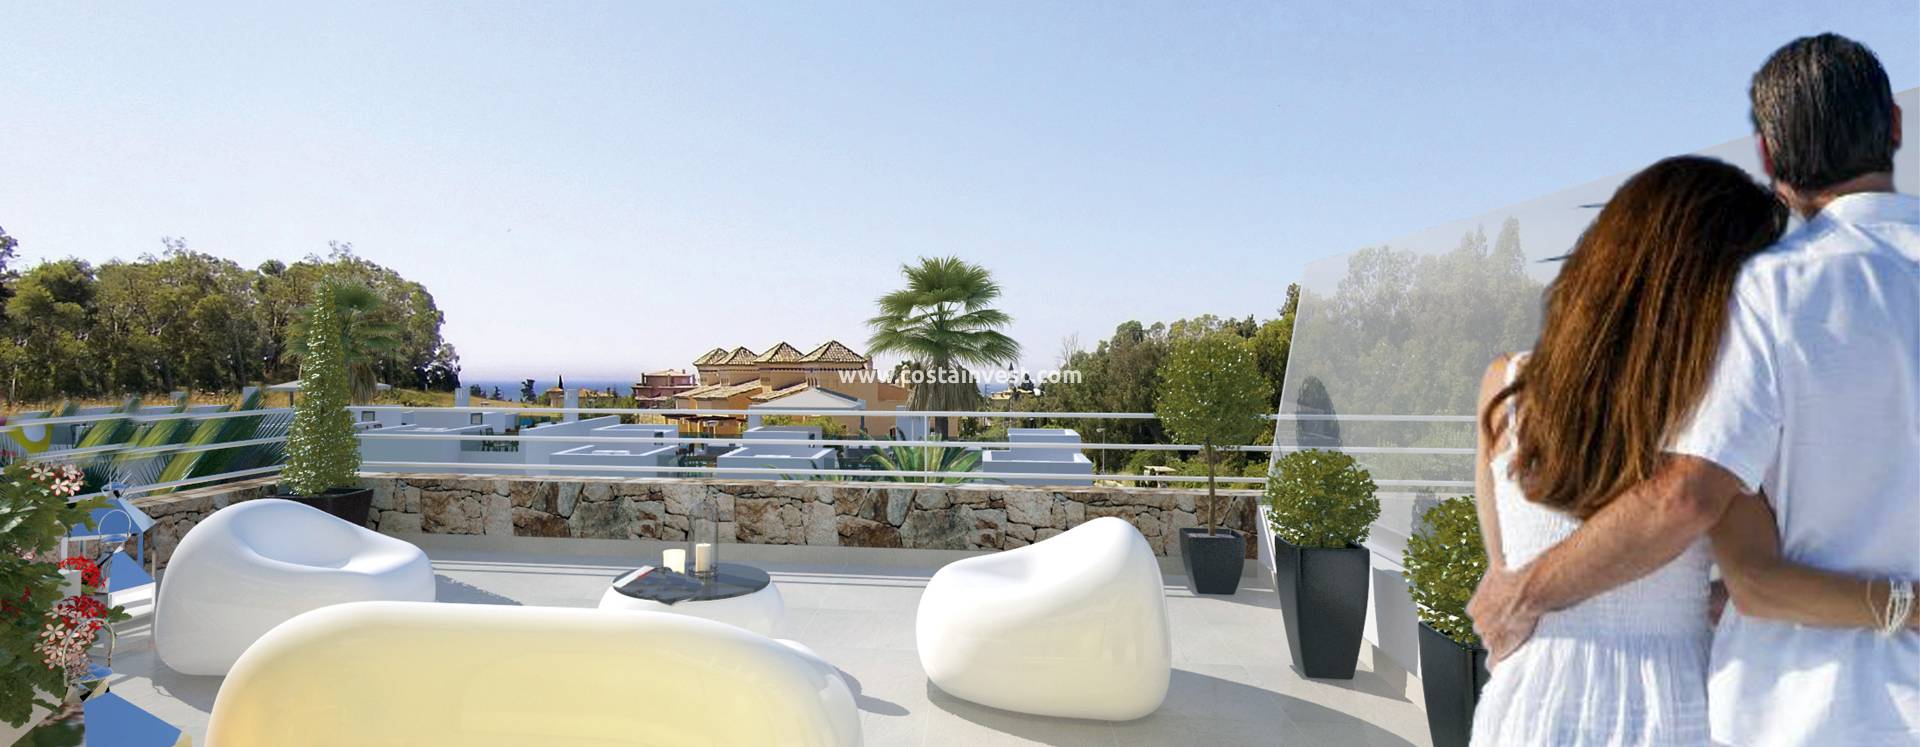 Construcția nouă - Casă duplex - Marbella 